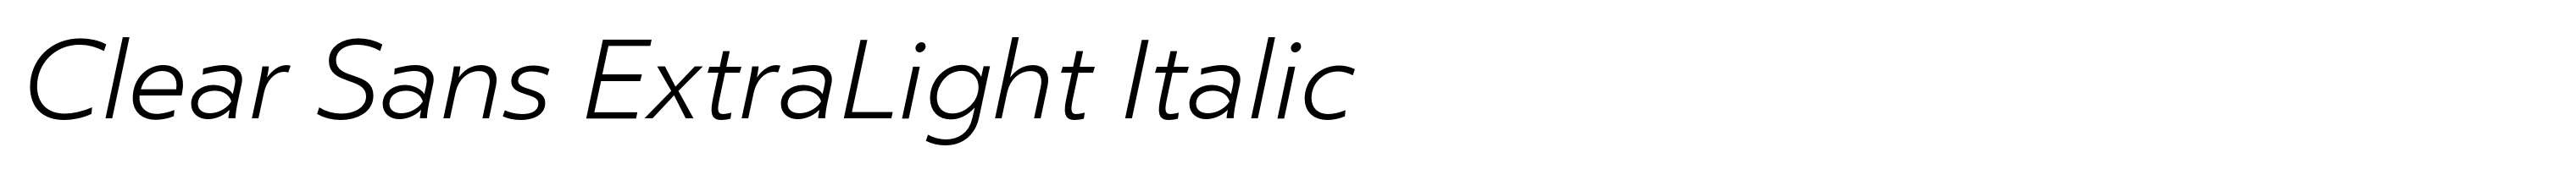 Clear Sans ExtraLight Italic